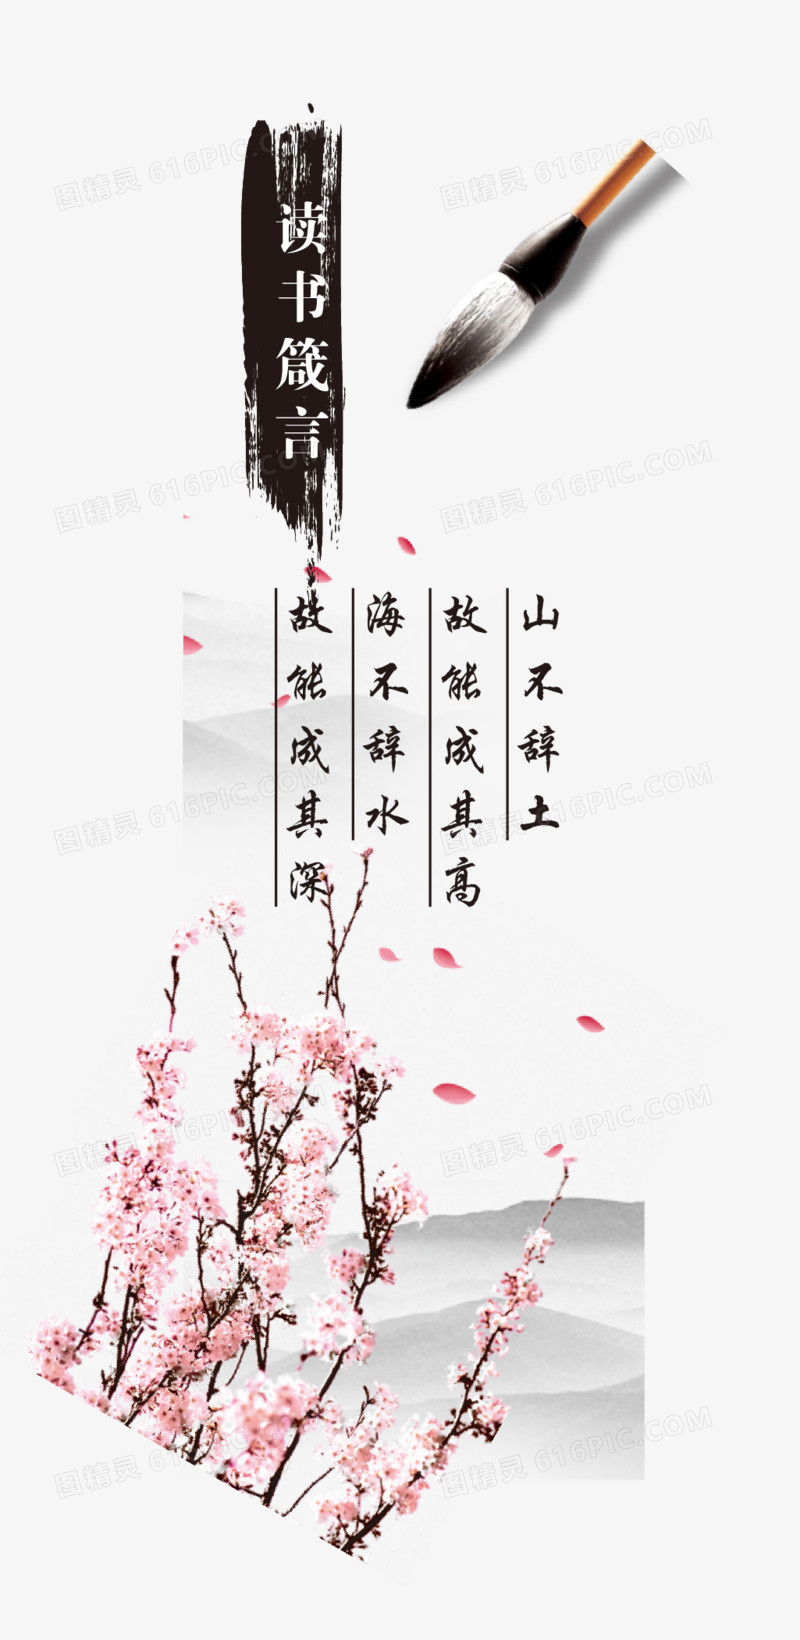 中国风水墨书签元素梅